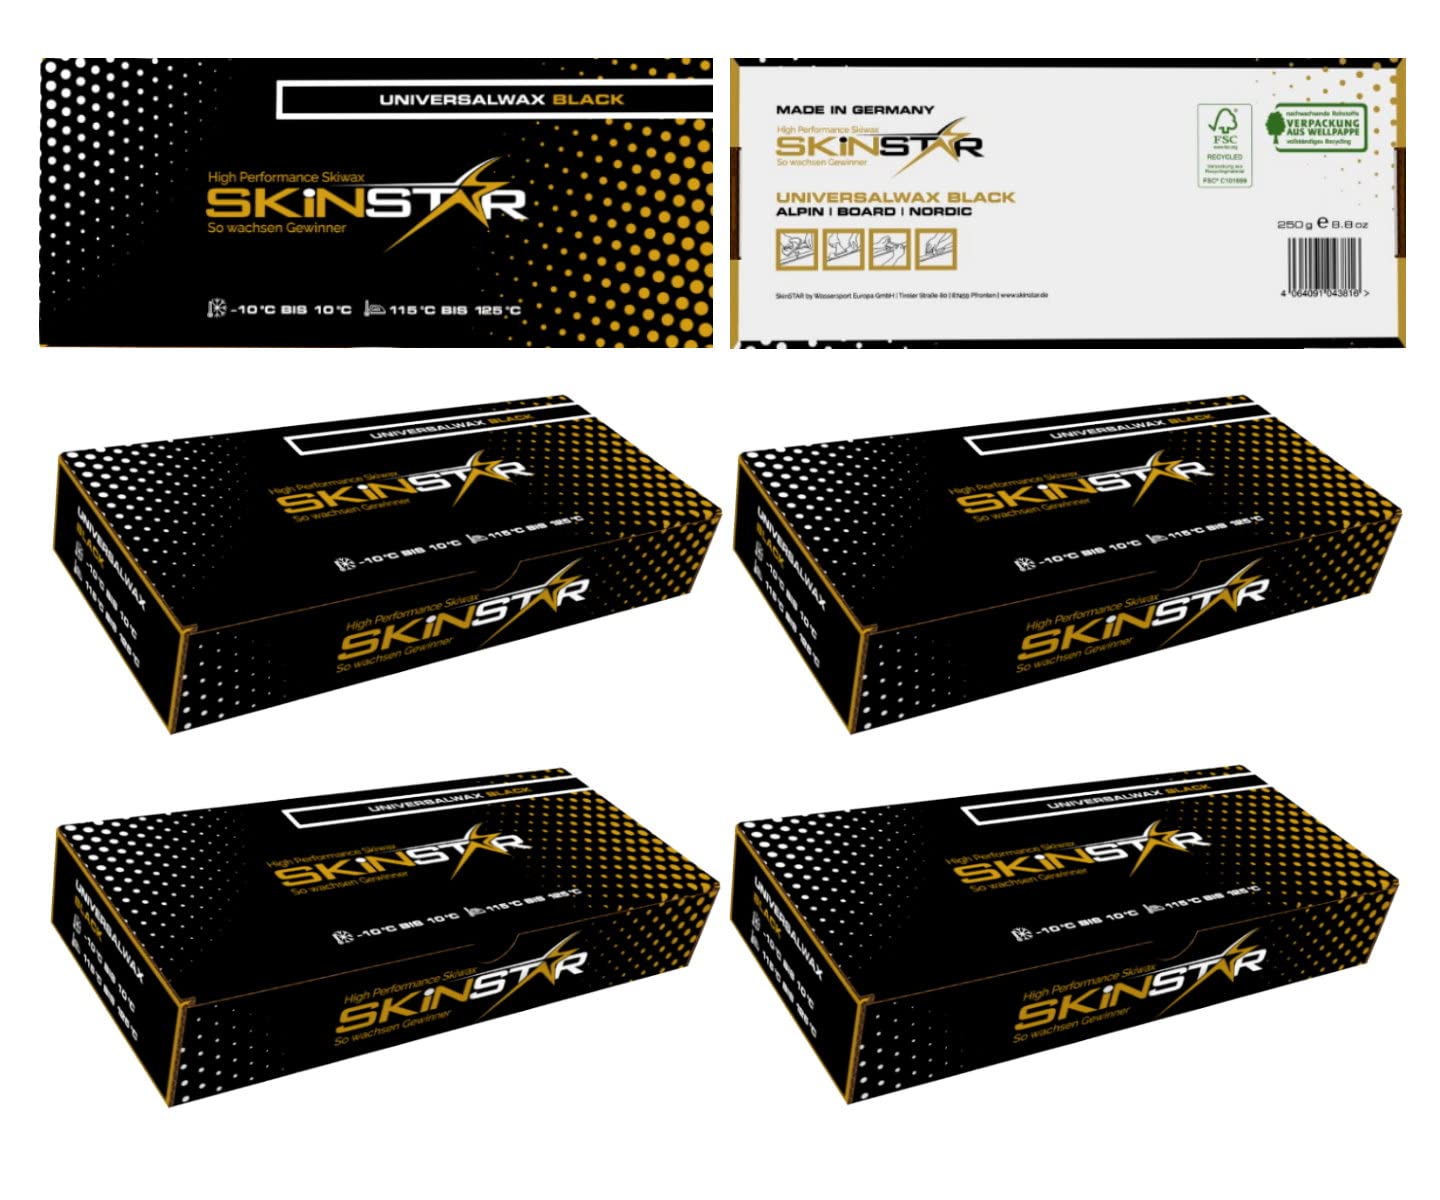 SkinStar Black Edition Universal Skiwachs Rennwachs Ski und Langlauf Wachs Ski Wax 1 kg